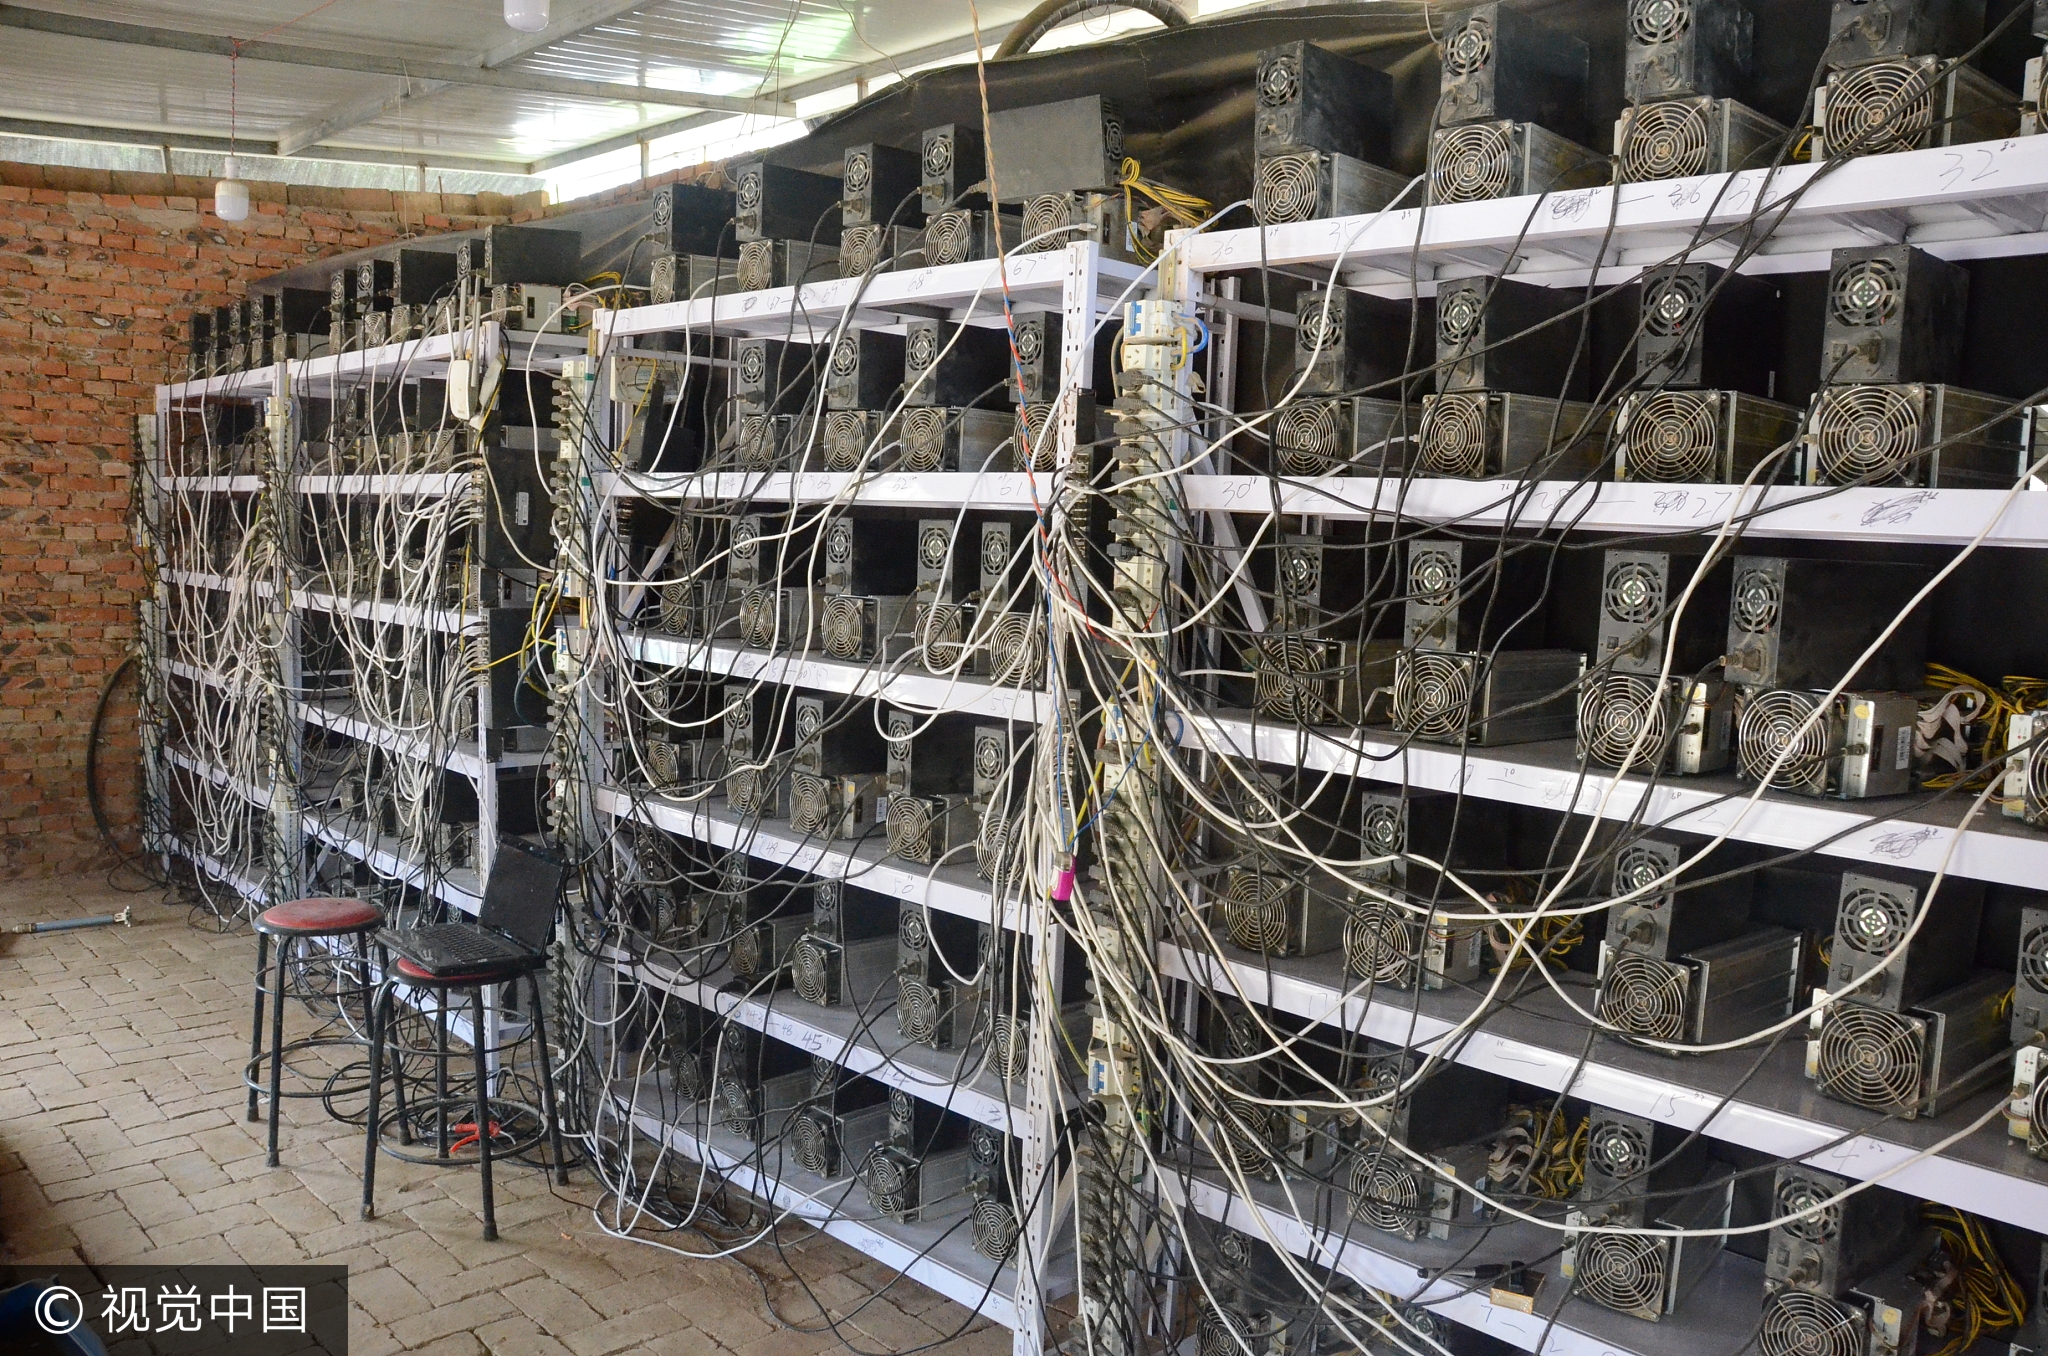 陕西延安:1600台 挖矿机 盗电 挖比特币